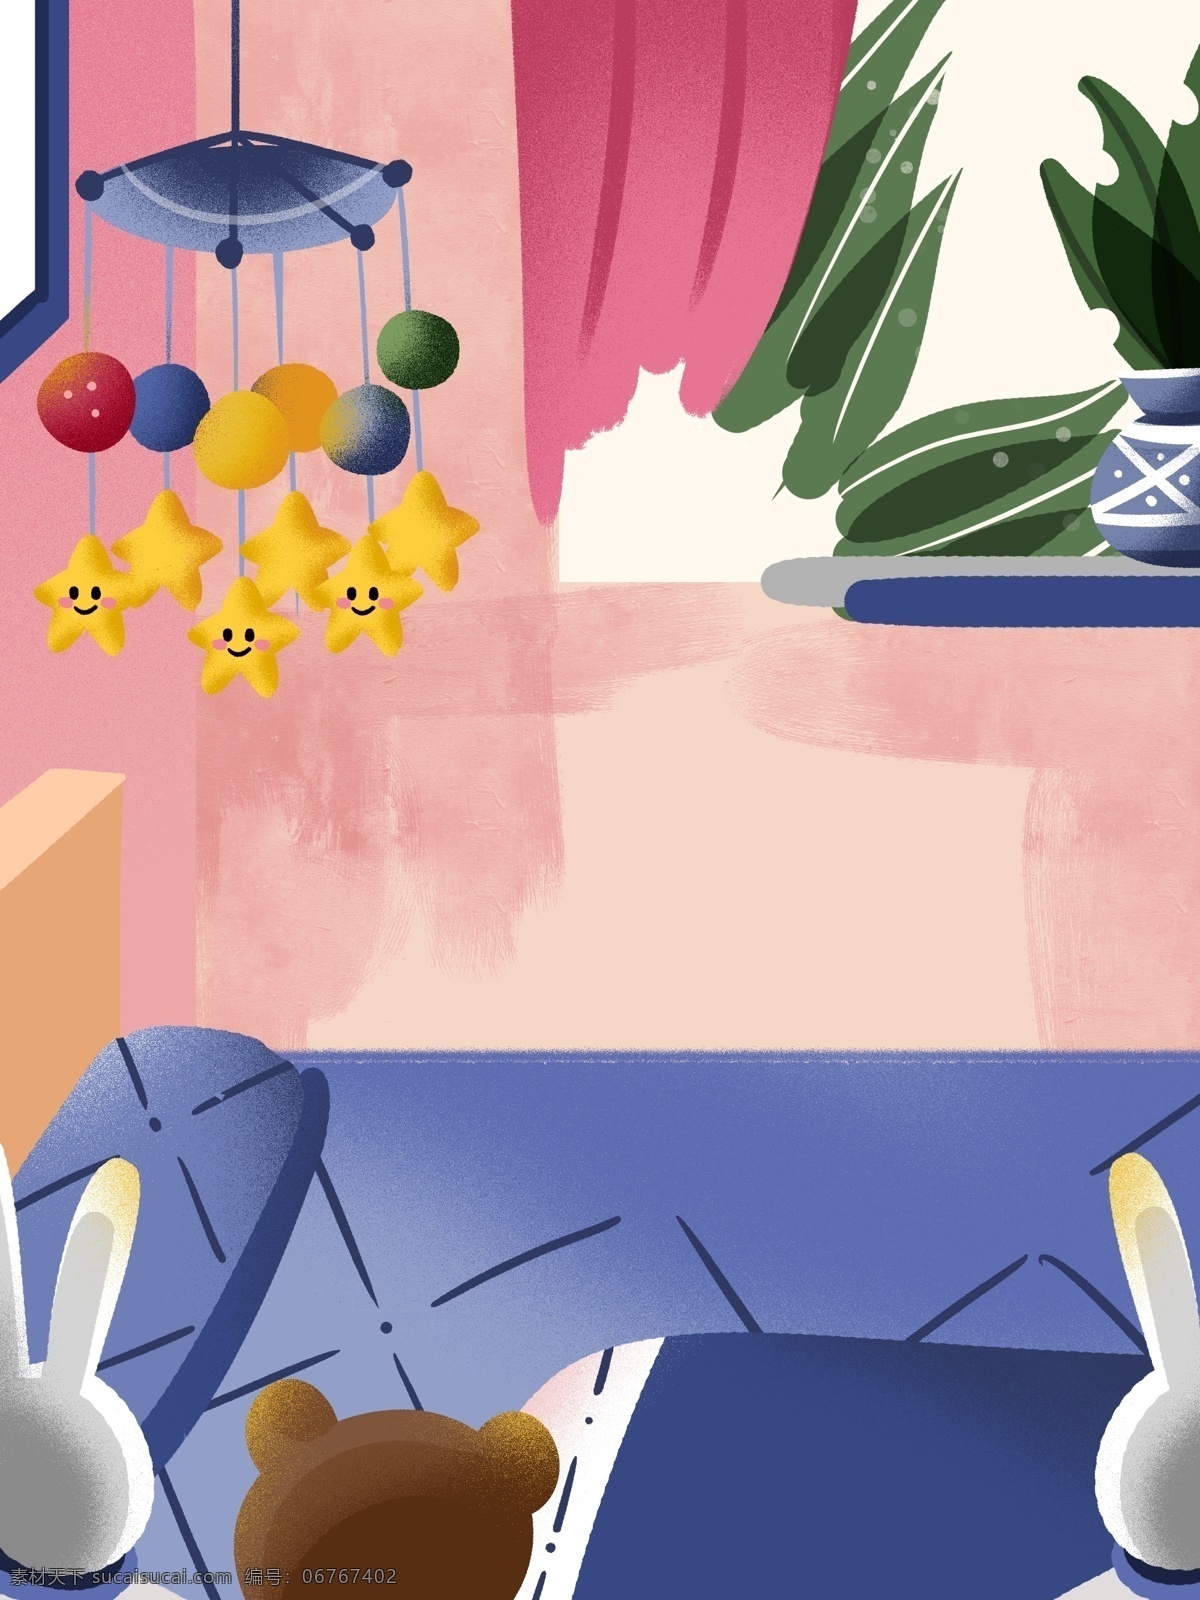 彩色 卡通 房屋 手绘 背景 房间 儿童房 创意 装饰 设计背景 海报背景 简约 图案